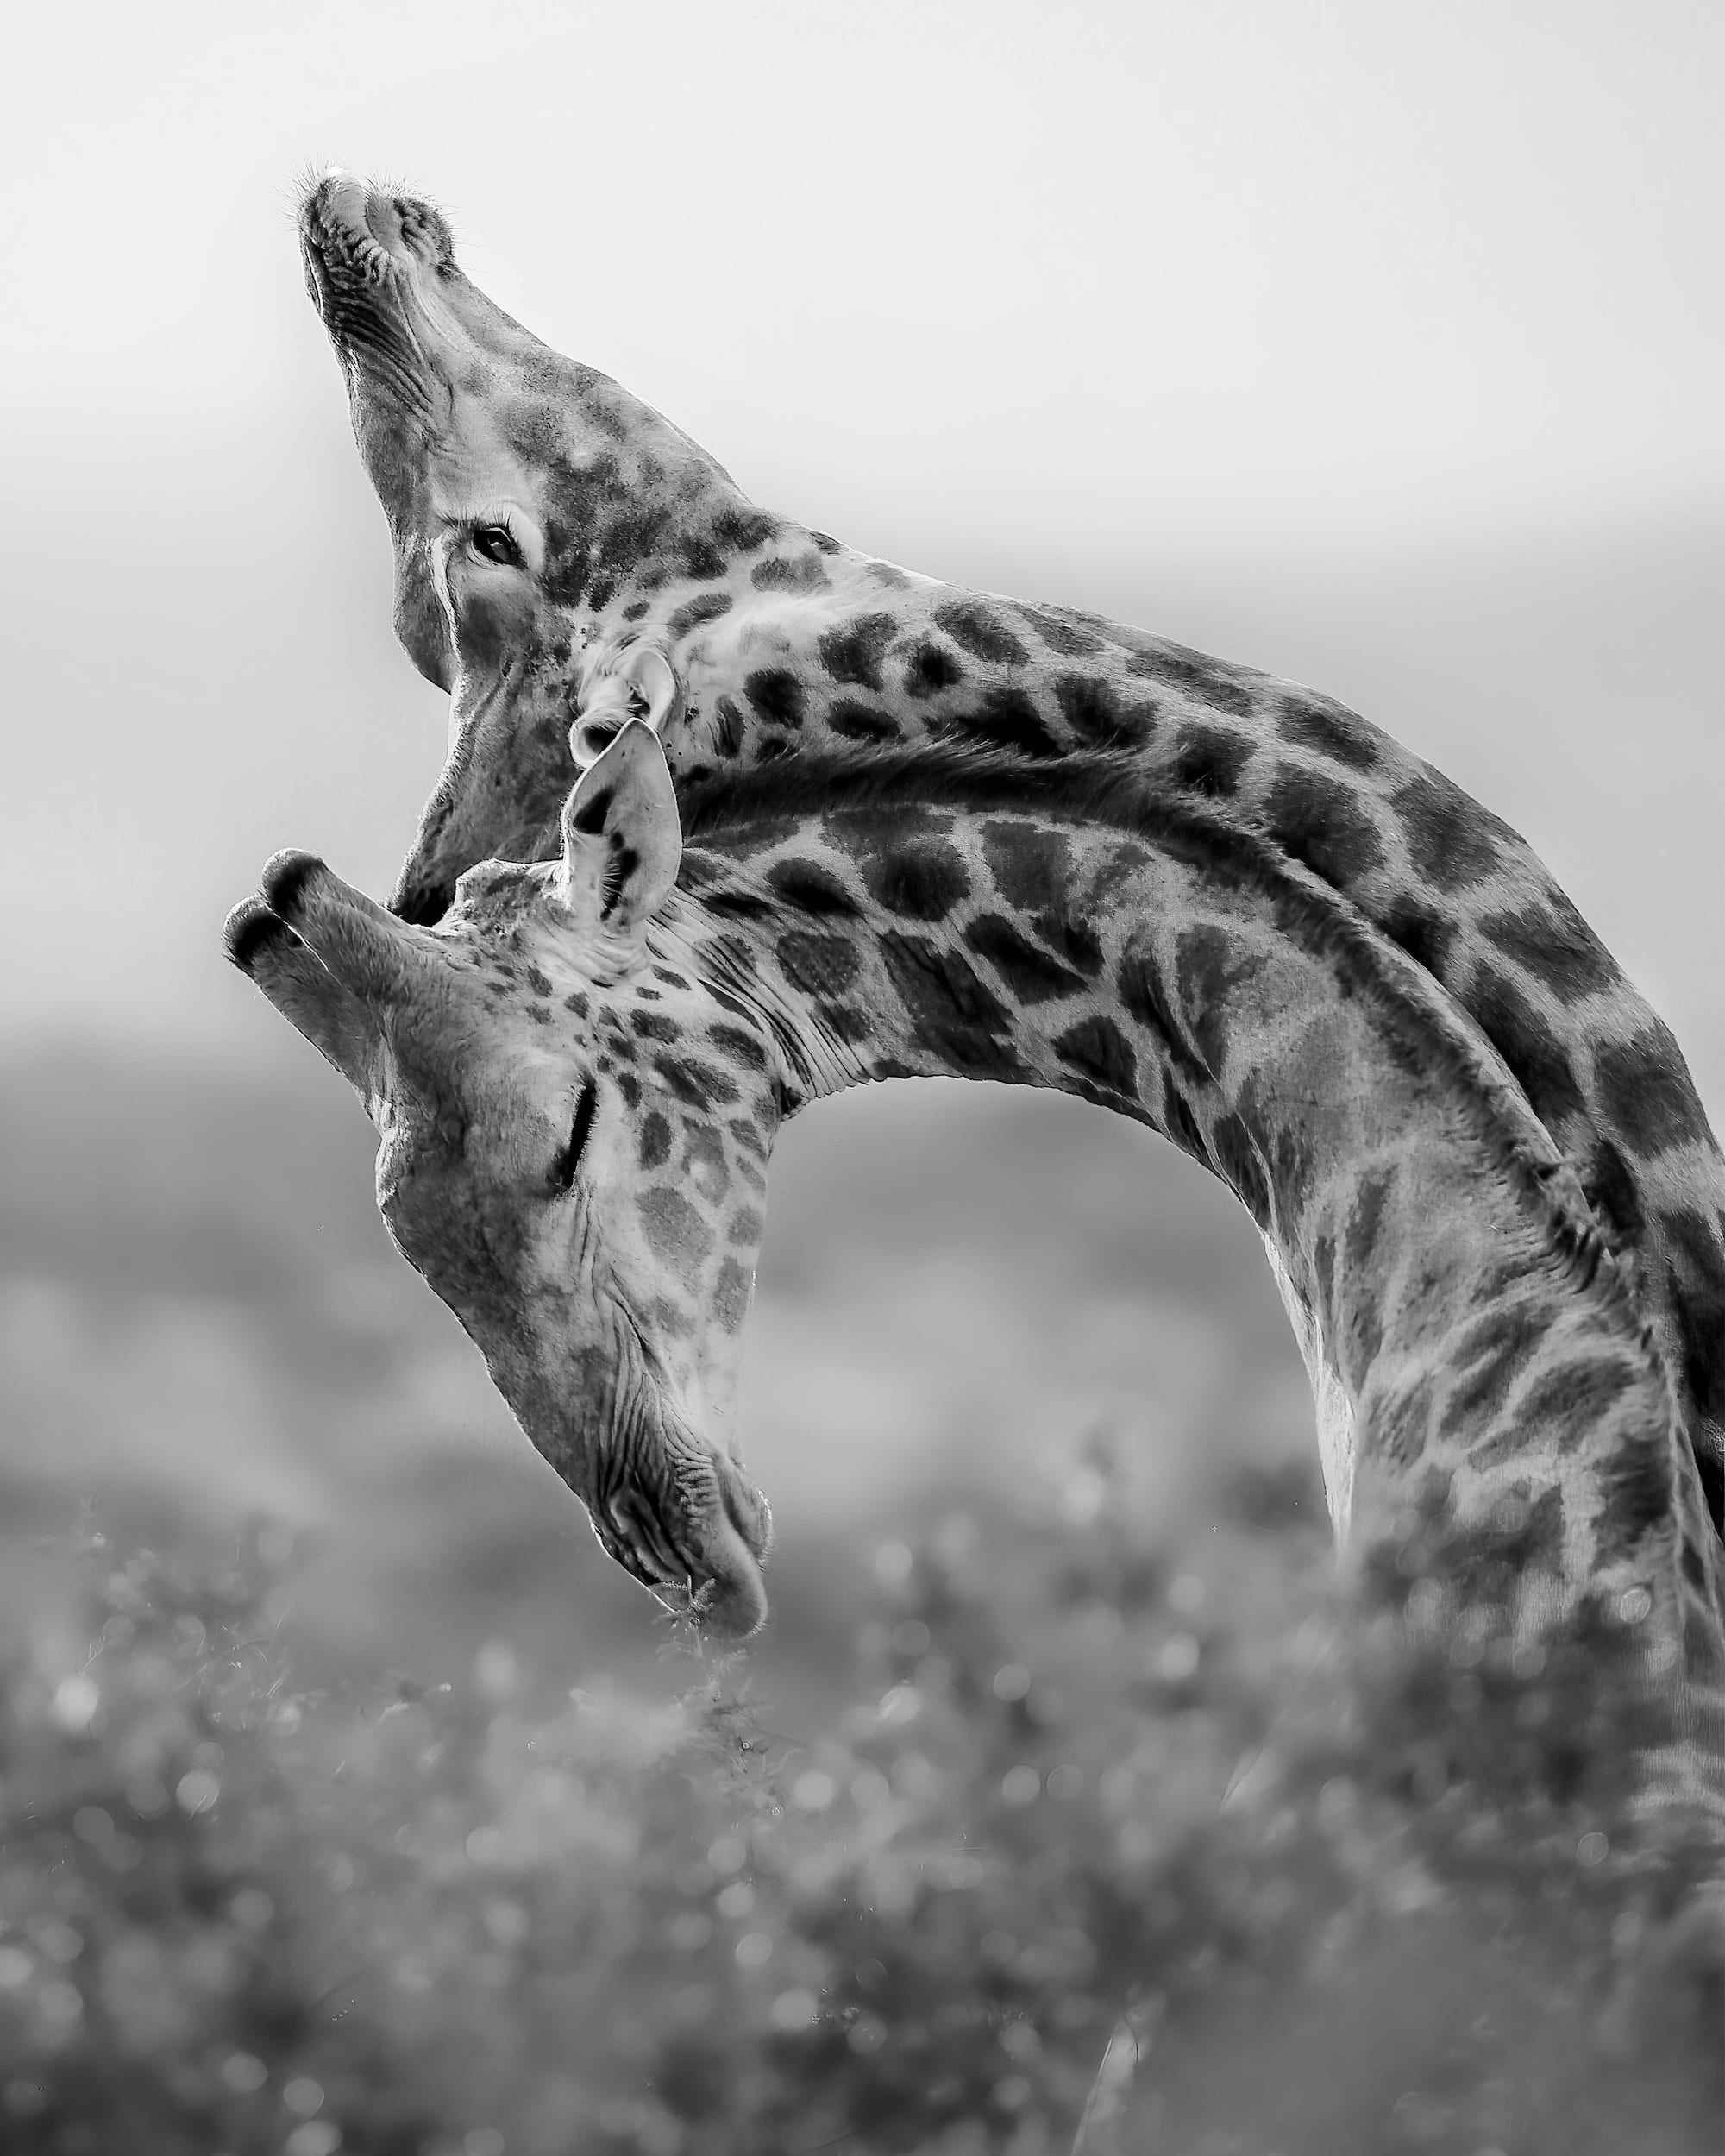 Giraffen pressen kämpfend ihre Hälse zusammen